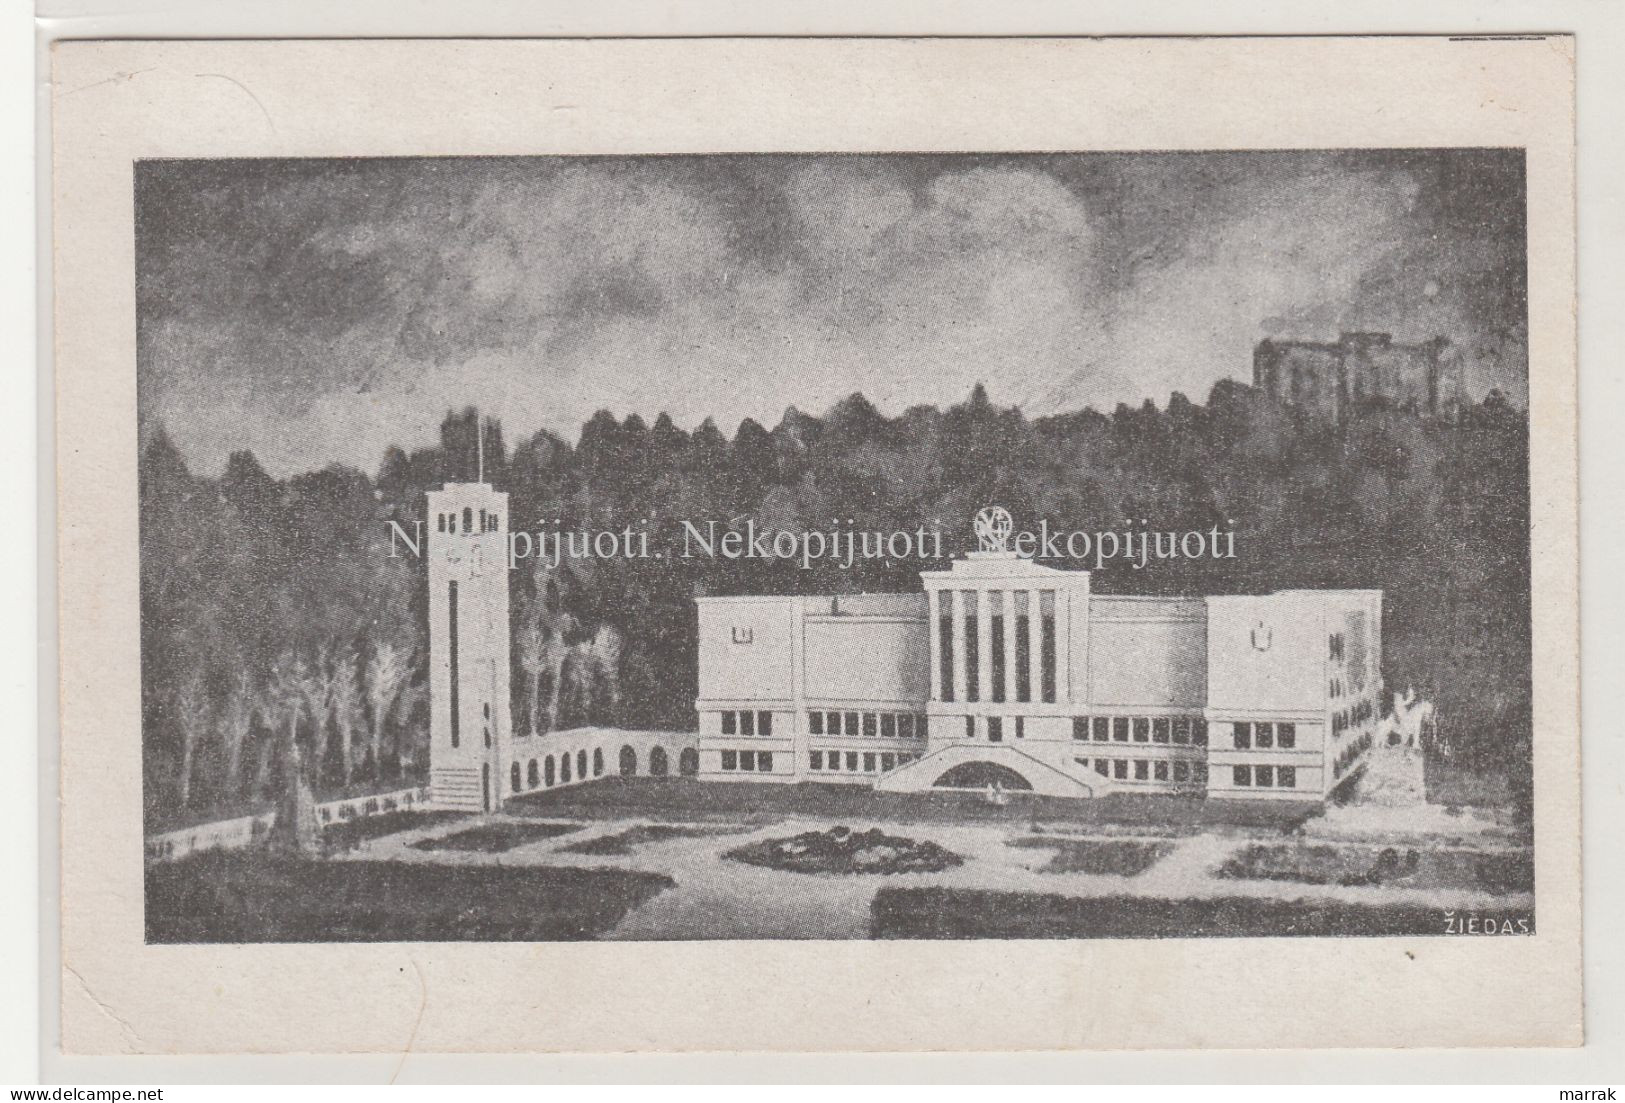 Kaunas, Karo Muziejus, Apie 1930 M. Atvirukas - Lithuania